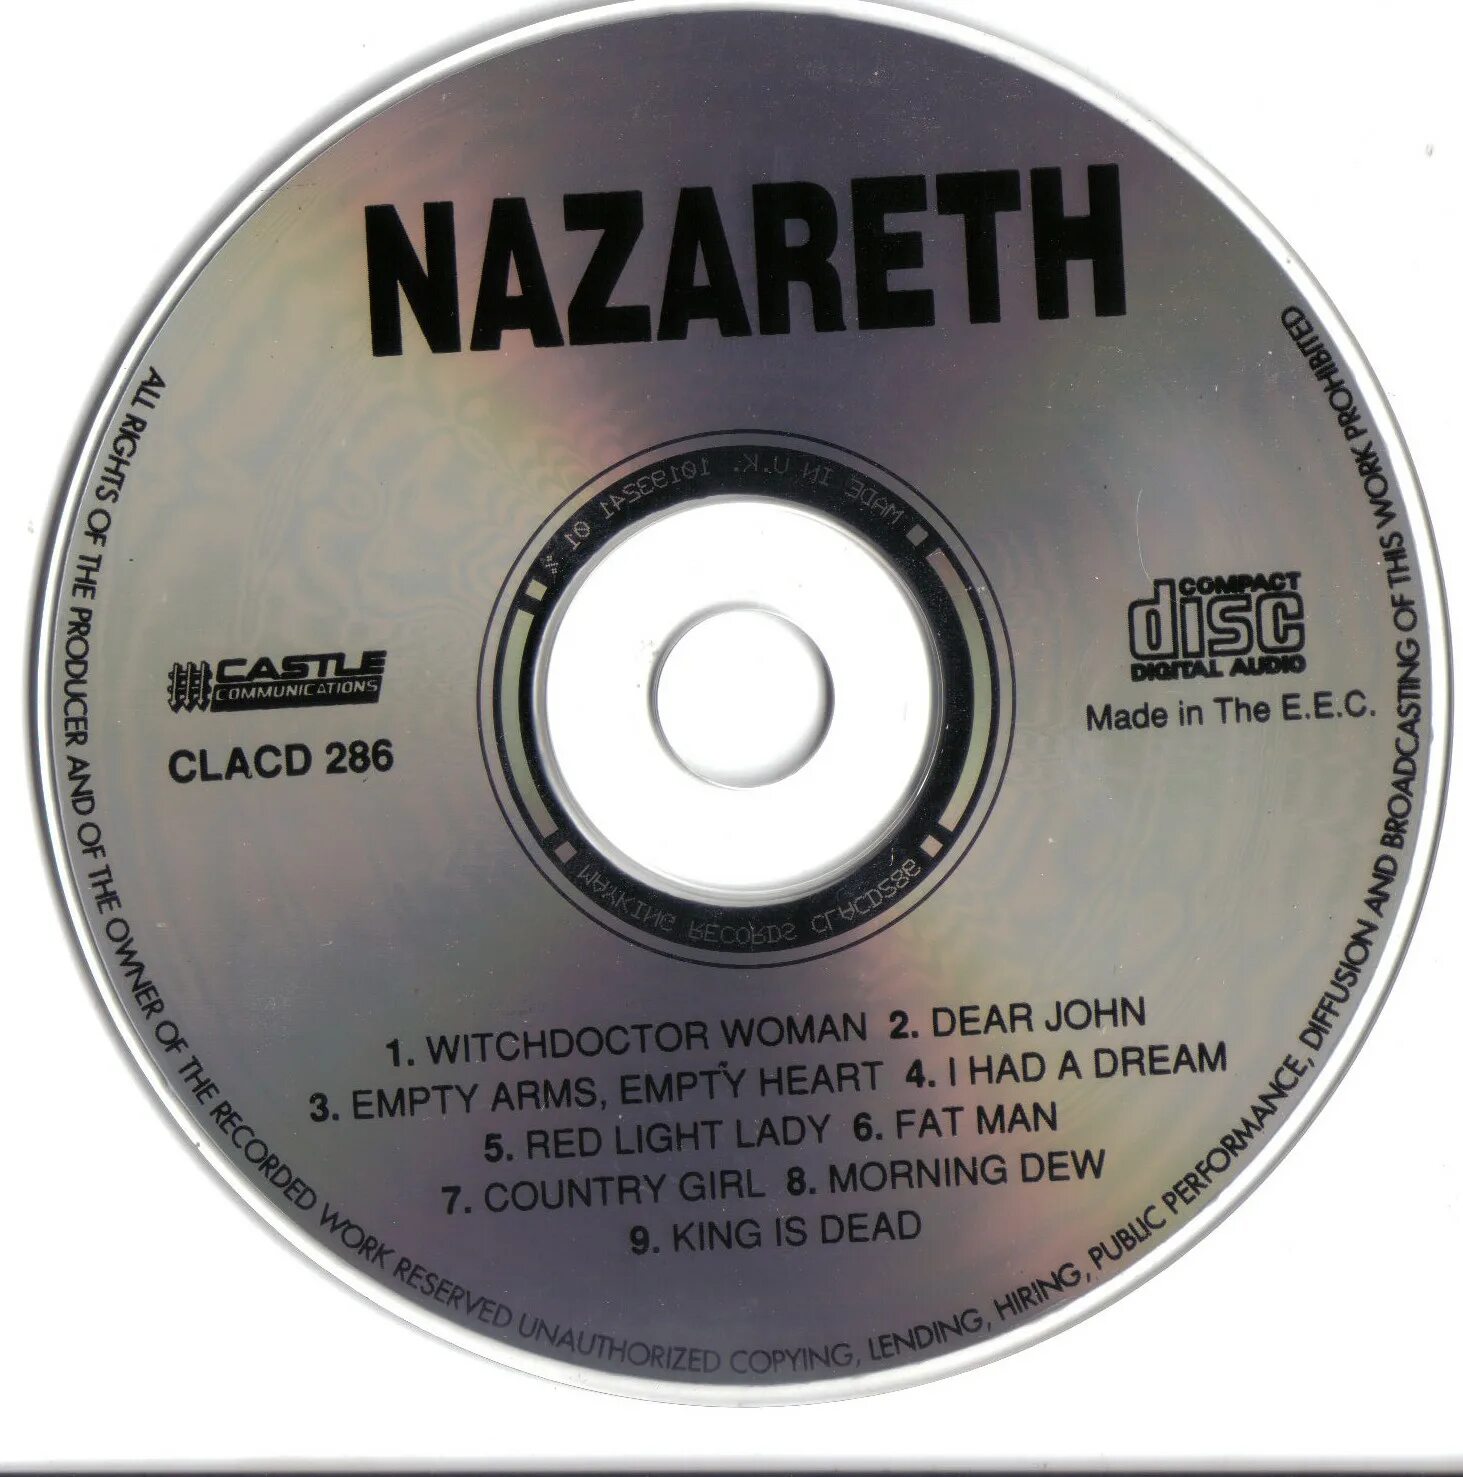 Nazareth 1971. Группа Nazareth 1971. Nazareth 1975. Nazareth Nazareth 1971 обложка. Nazareth nazareth треки